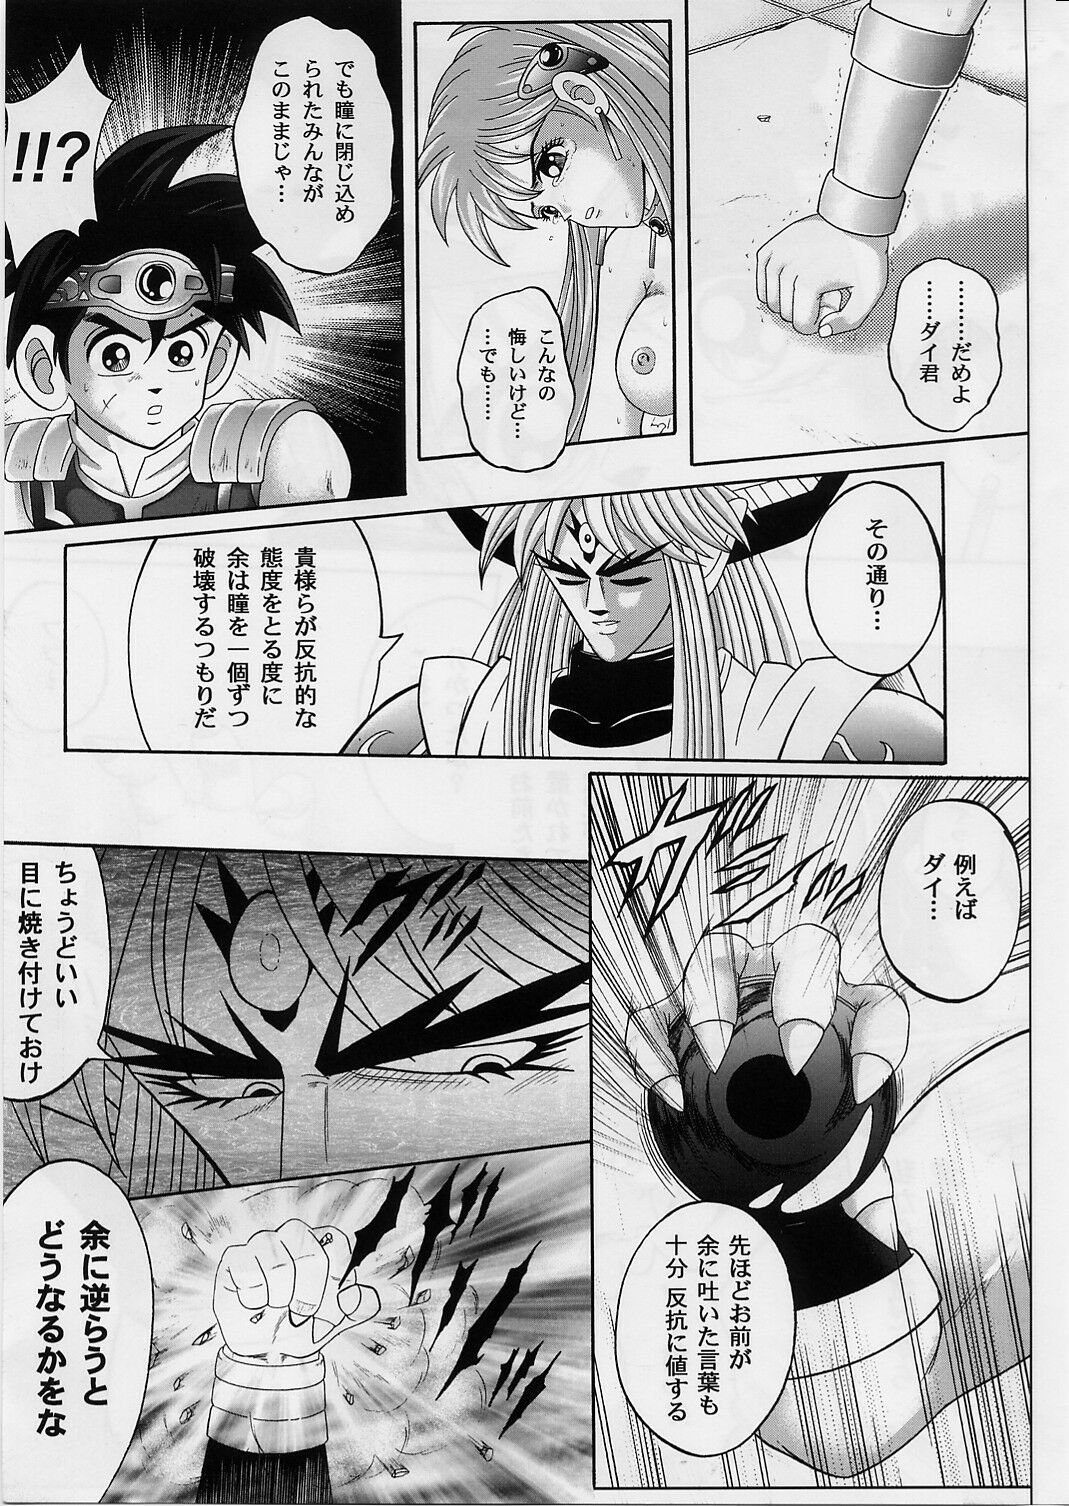 [Cyclone (Izumi, Reizei)] DIME ALLIANCE 2 (Dragon Quest Dai no Daibouken) page 8 full